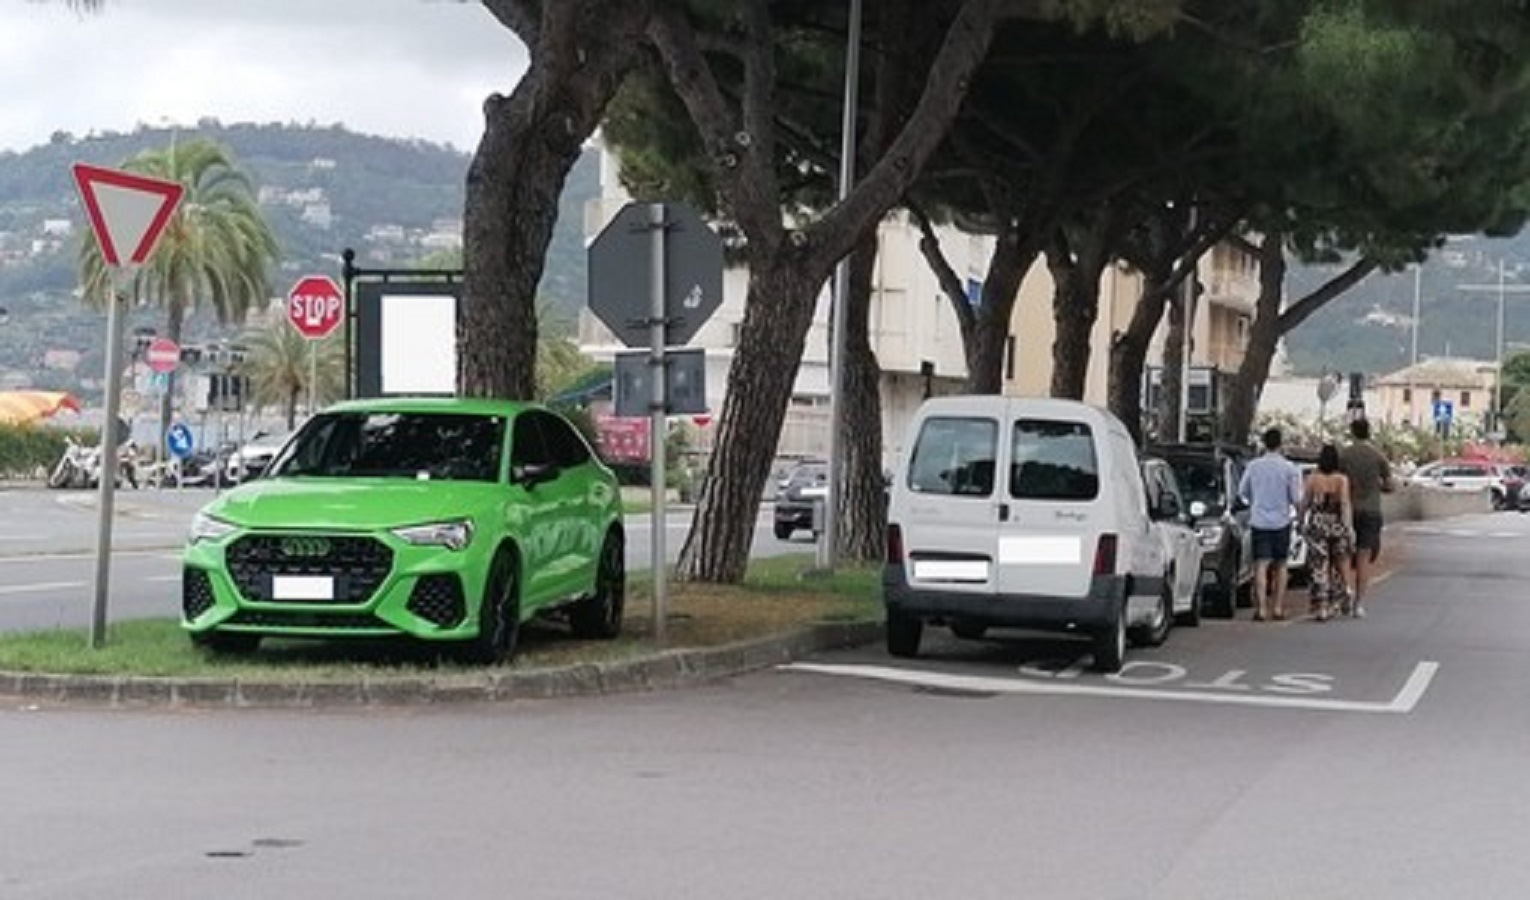 Parcheggio selvaggio, lascia auto su aiuola spartitraffico: multa da 500 euro